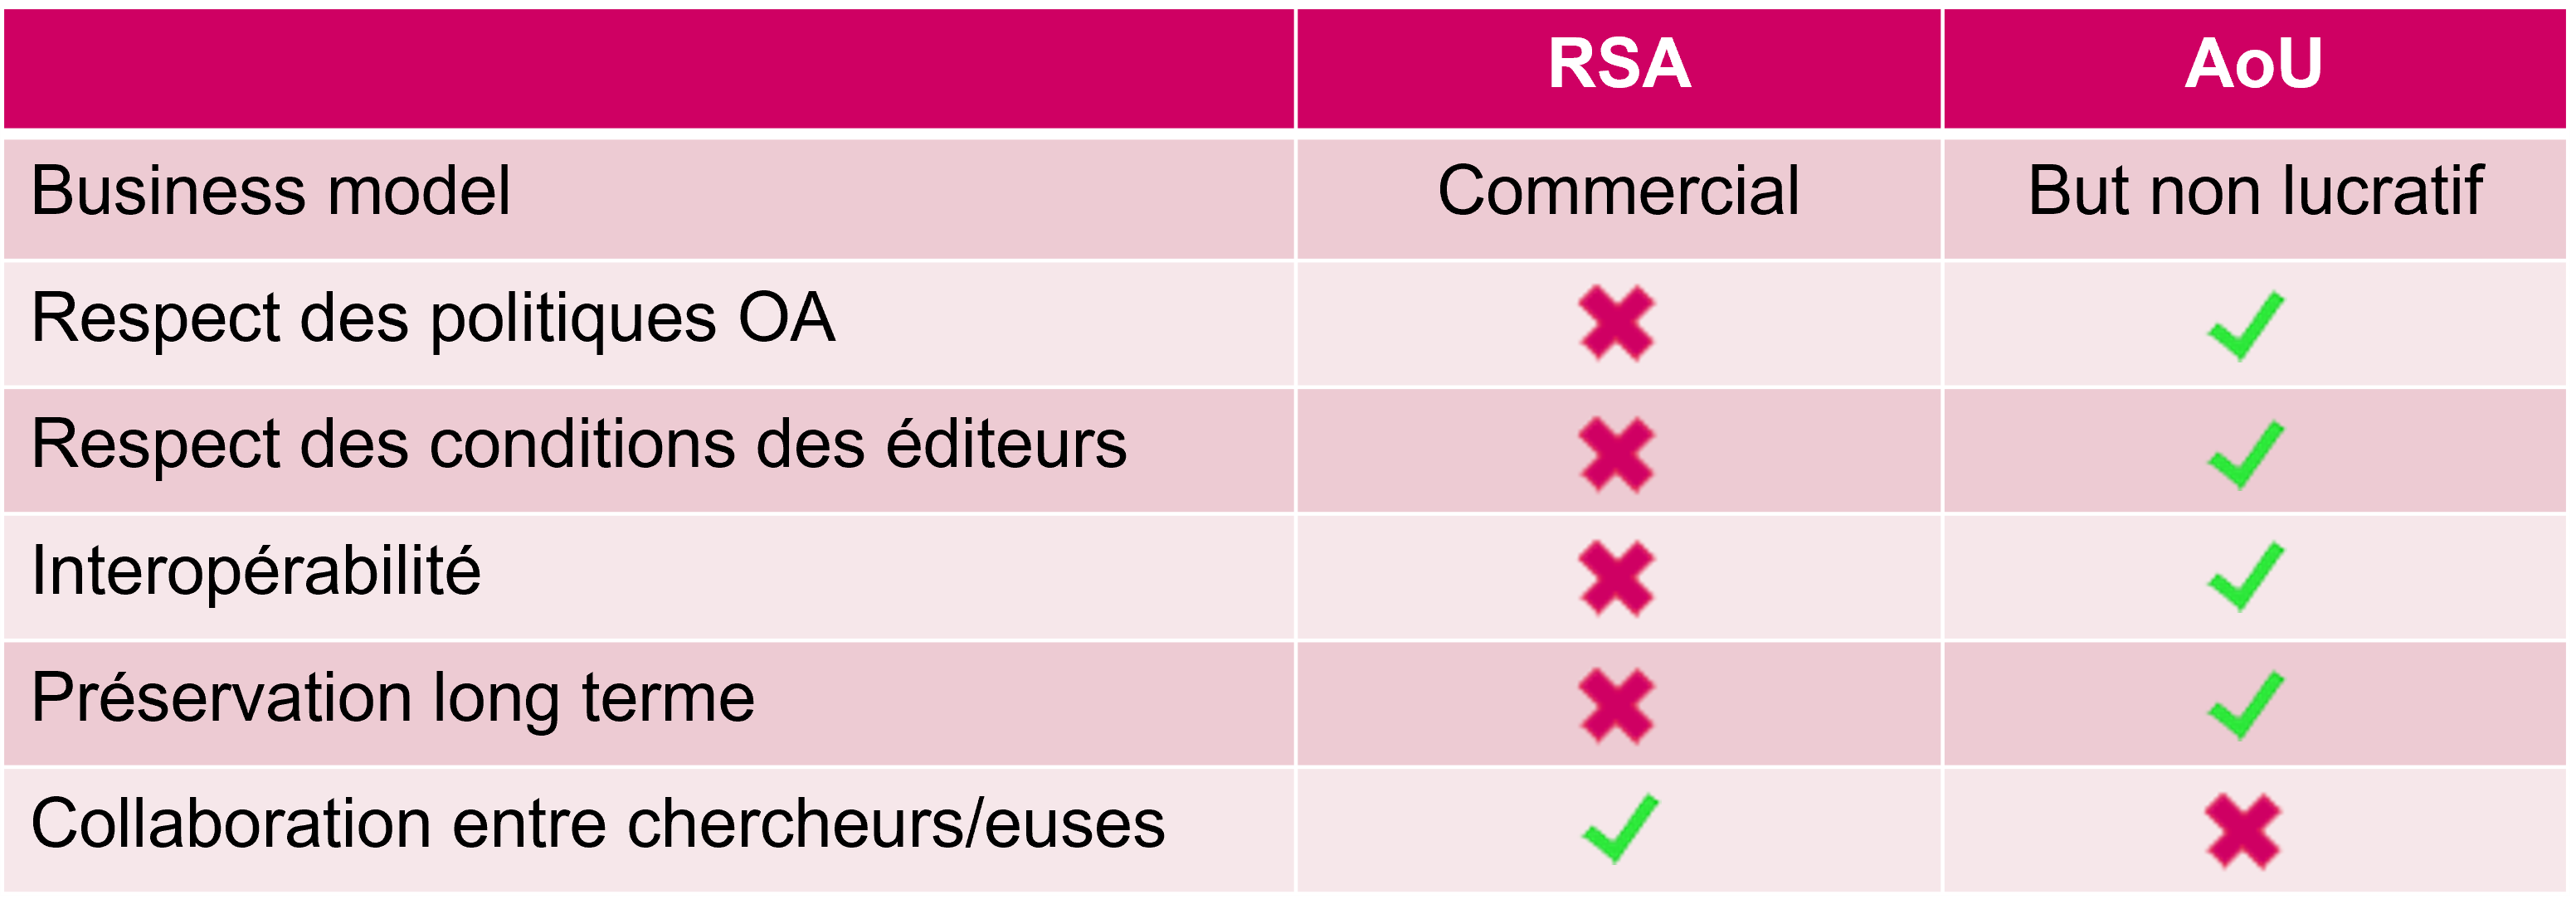 RSA-vs-Aou-FR.png